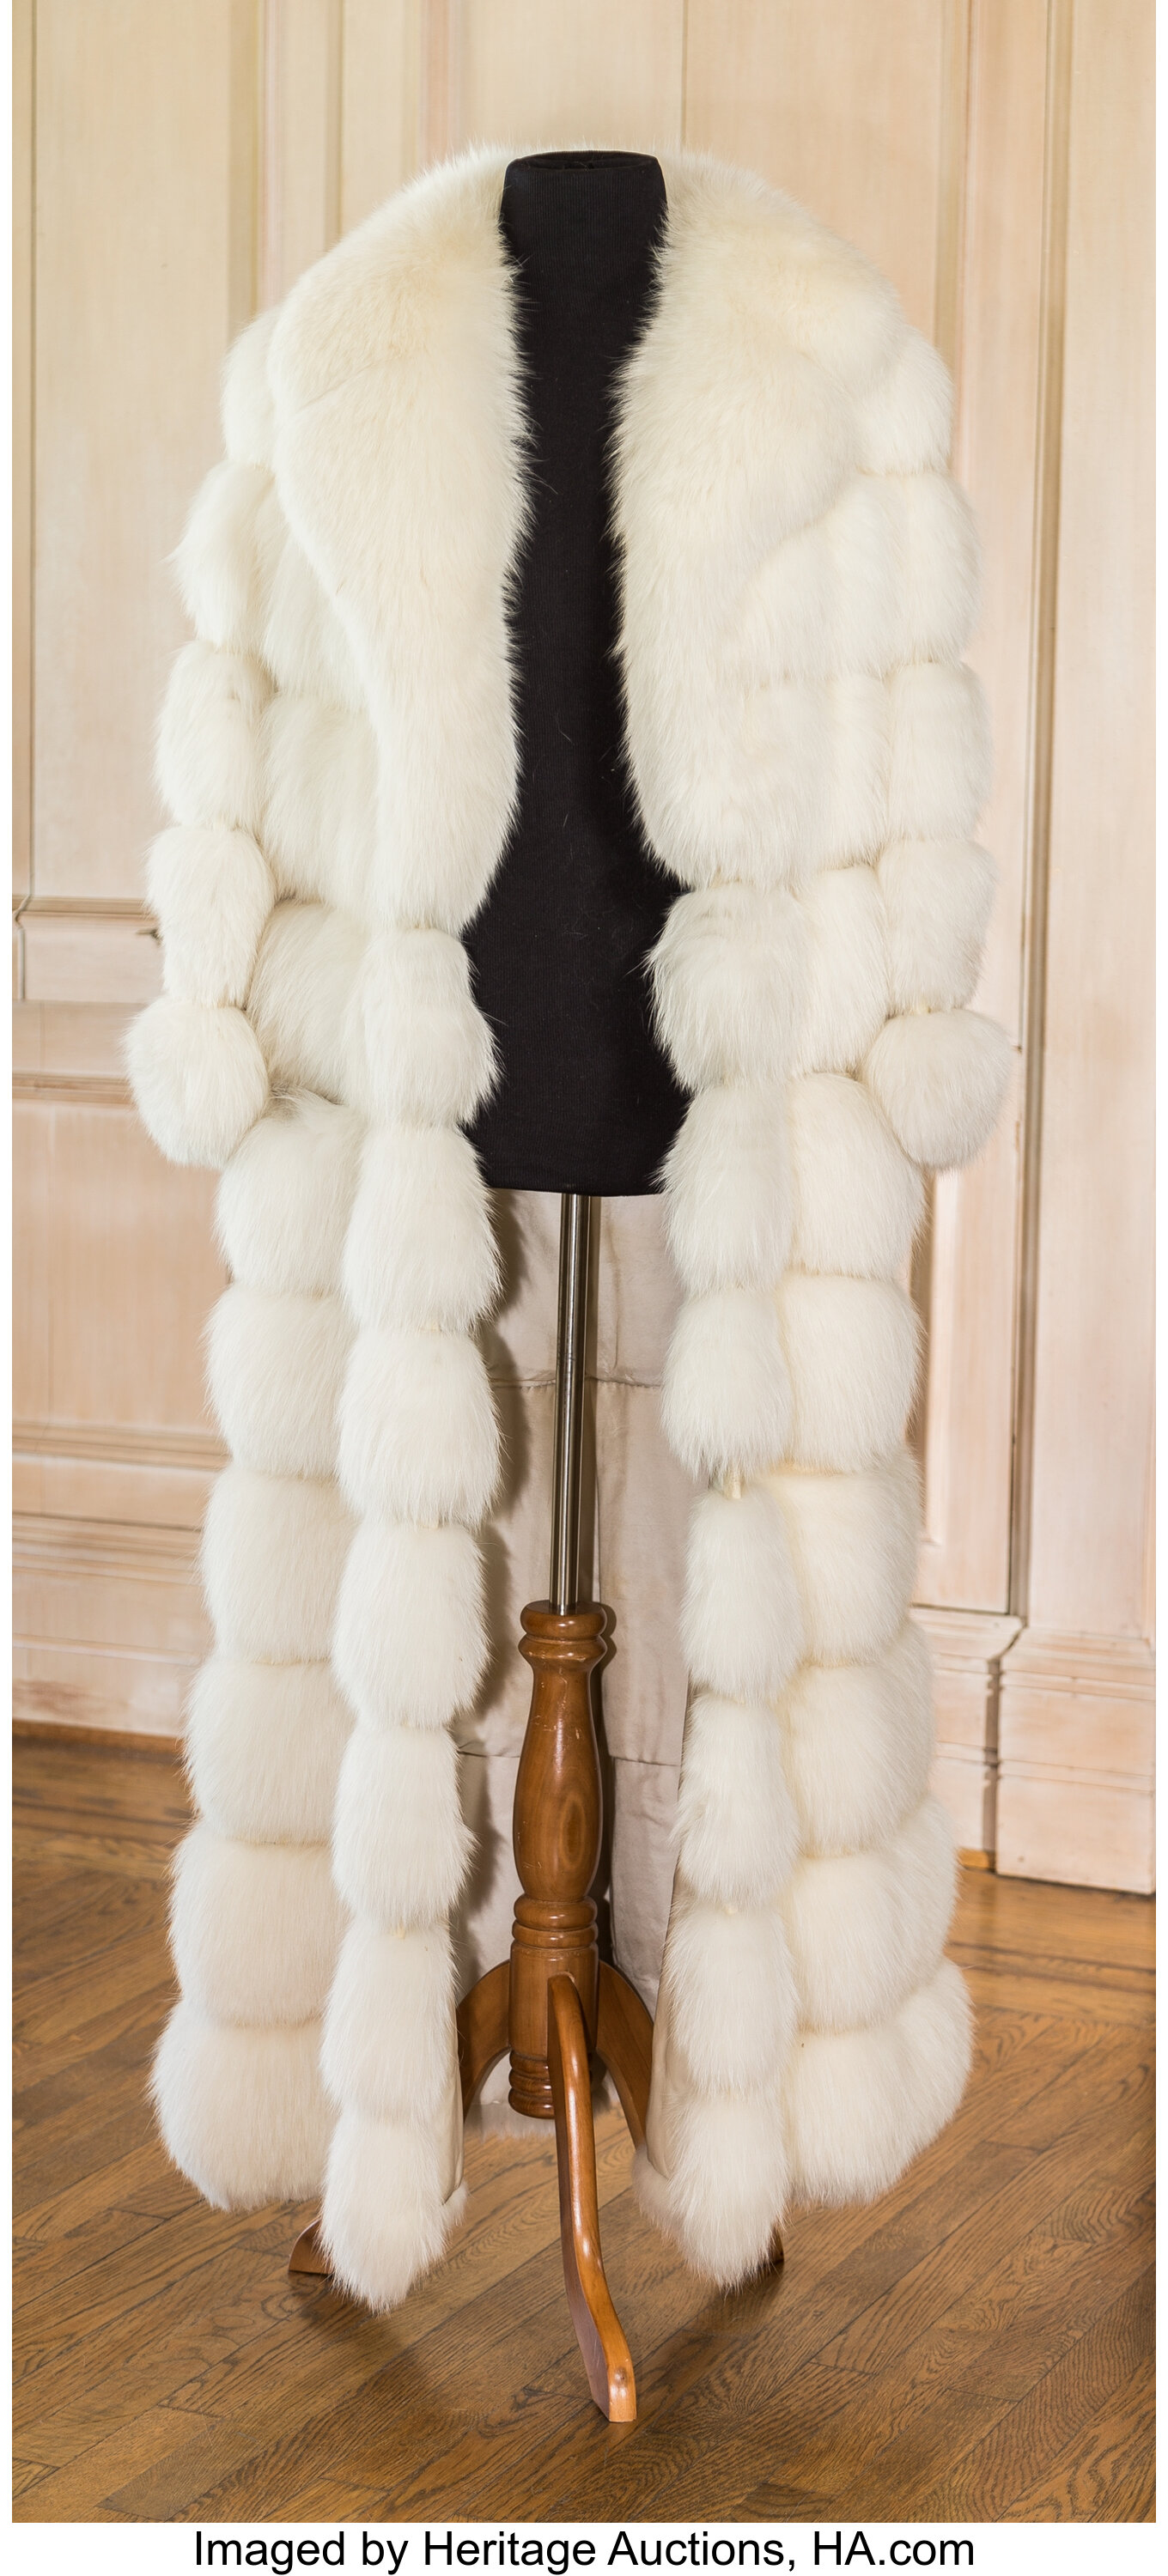 A Zsa Zsa Gabor Fur Coat Circa 1960s White Floor Length Long